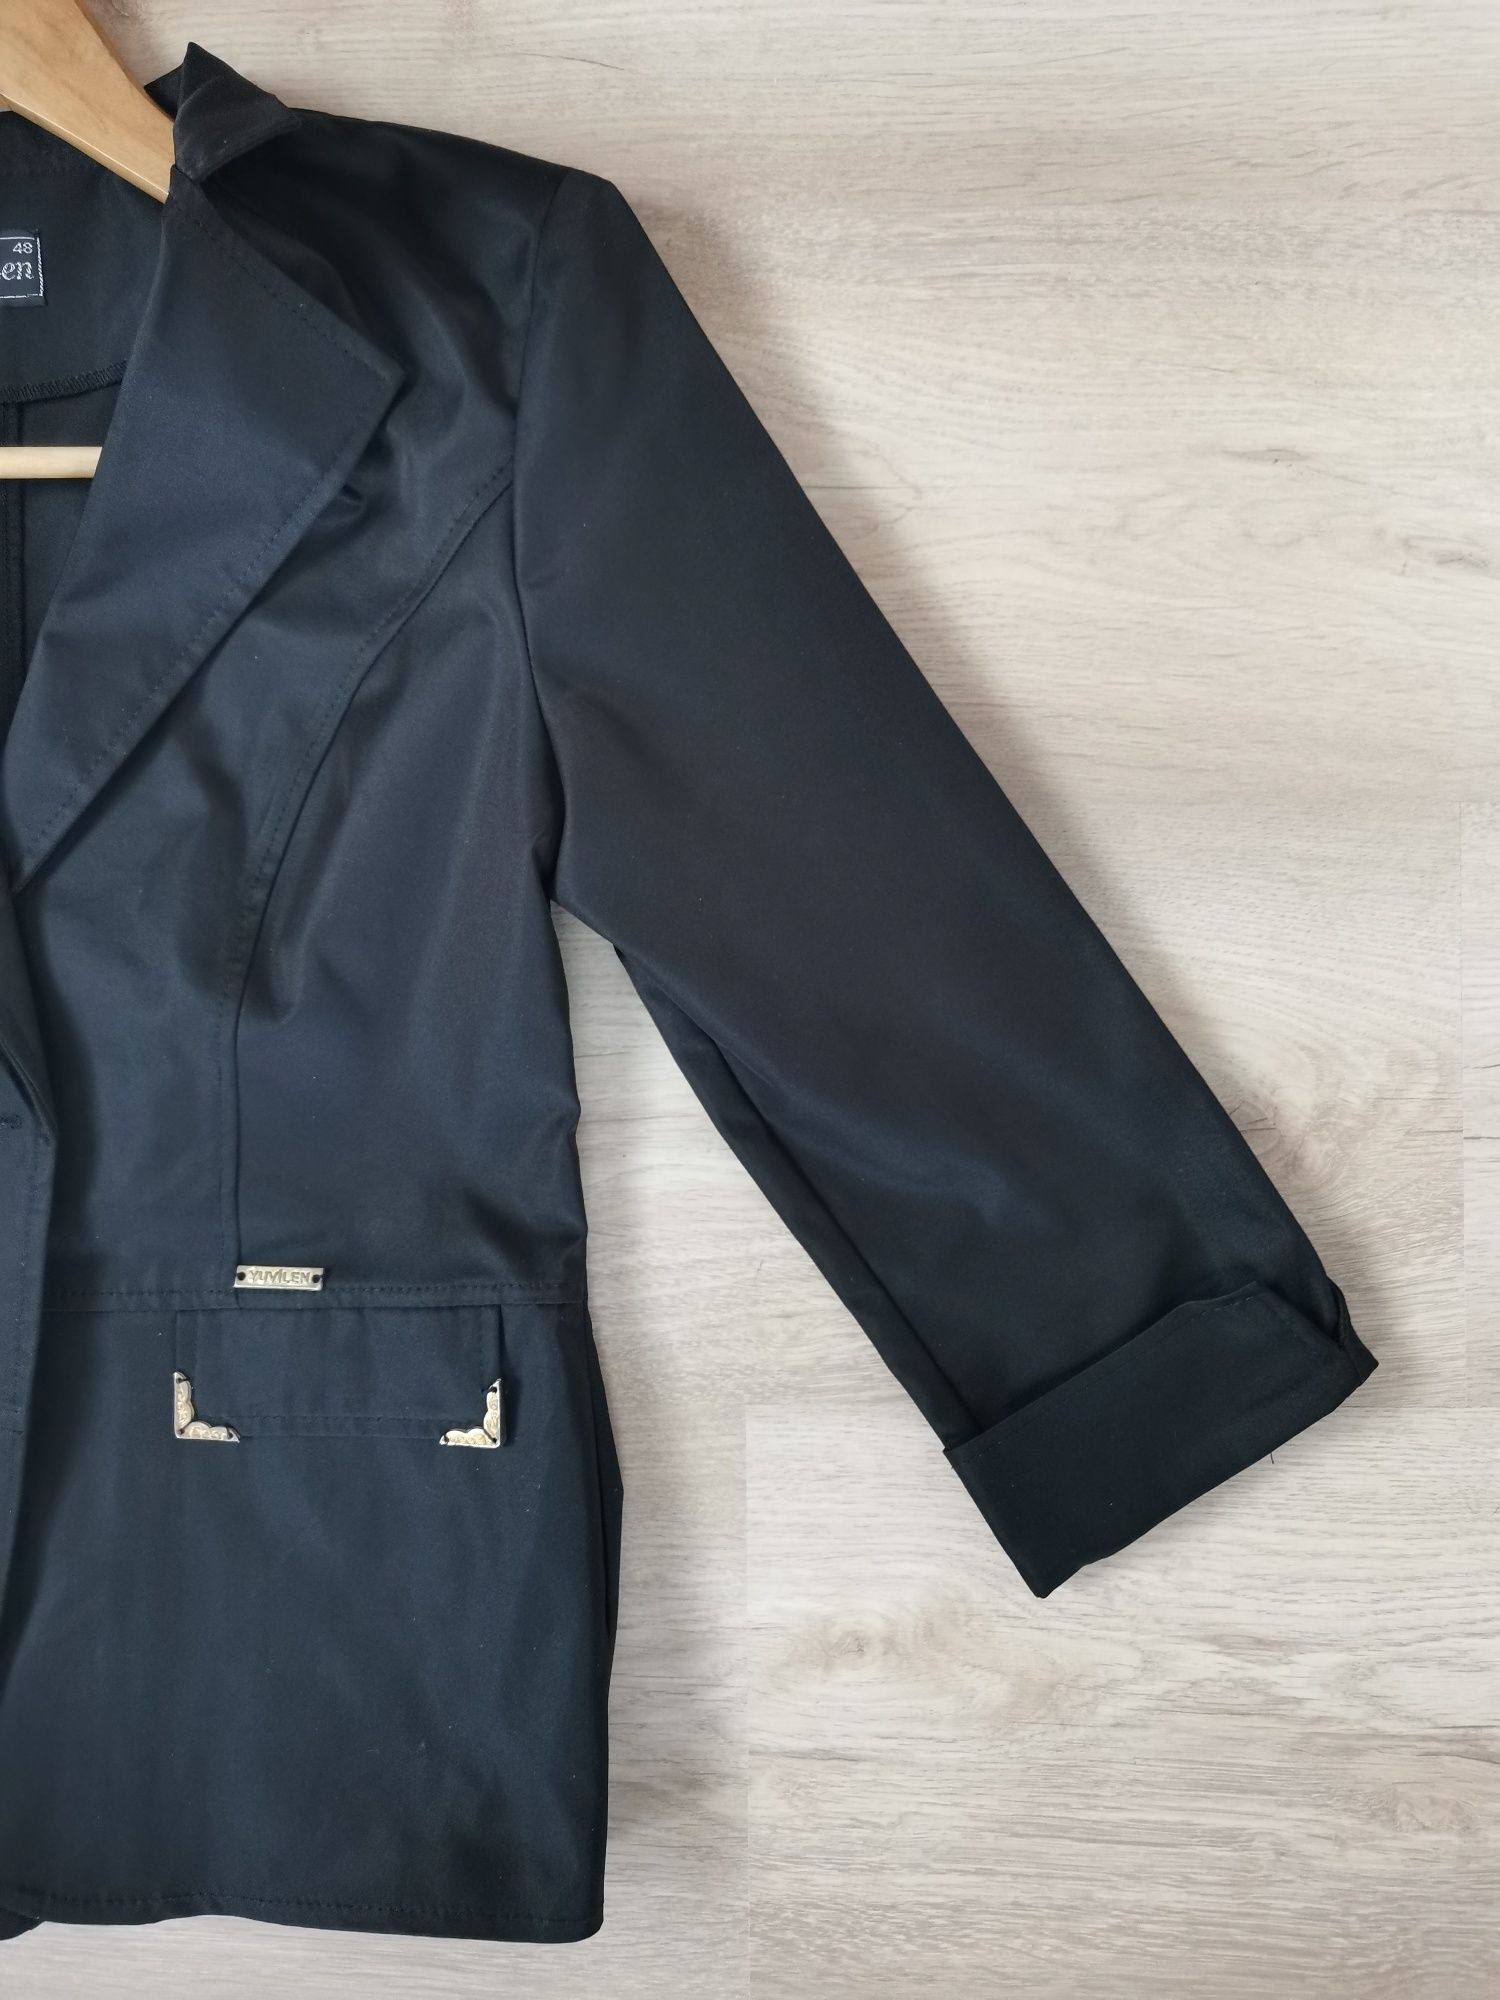 Чёрный женский пиджак. пиджак школьной формы. размер 48